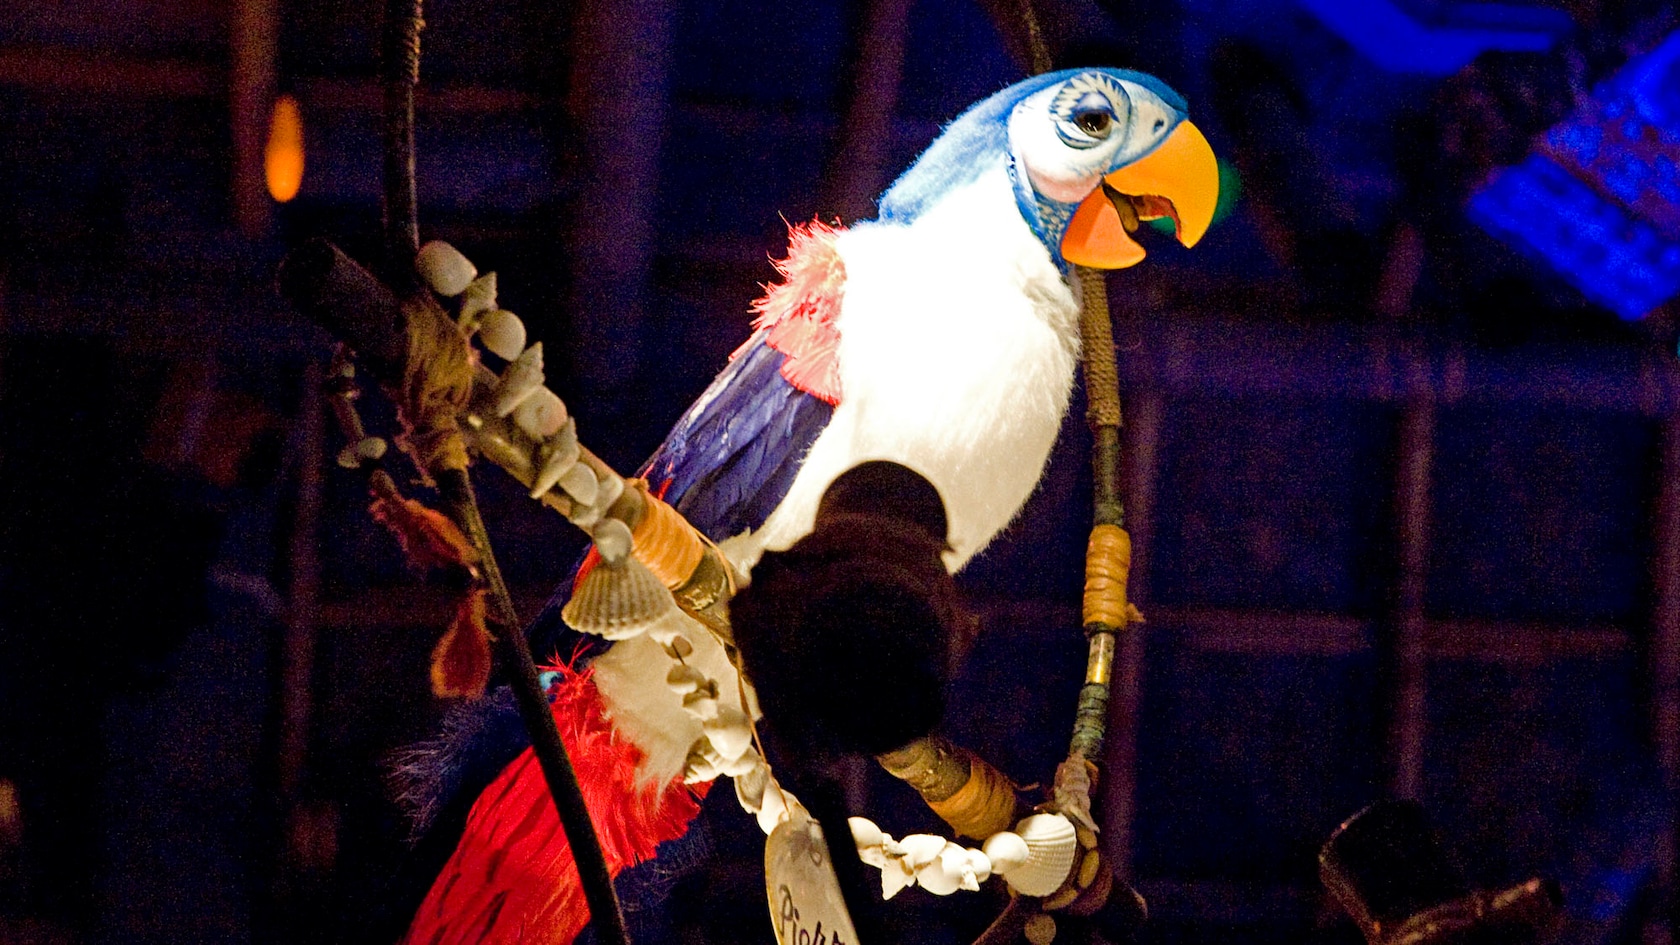 Marionnette audio-animatronique d'un perroquet chanteur nommé Pierre dans Enchanted Tiki Room de Walt Disney